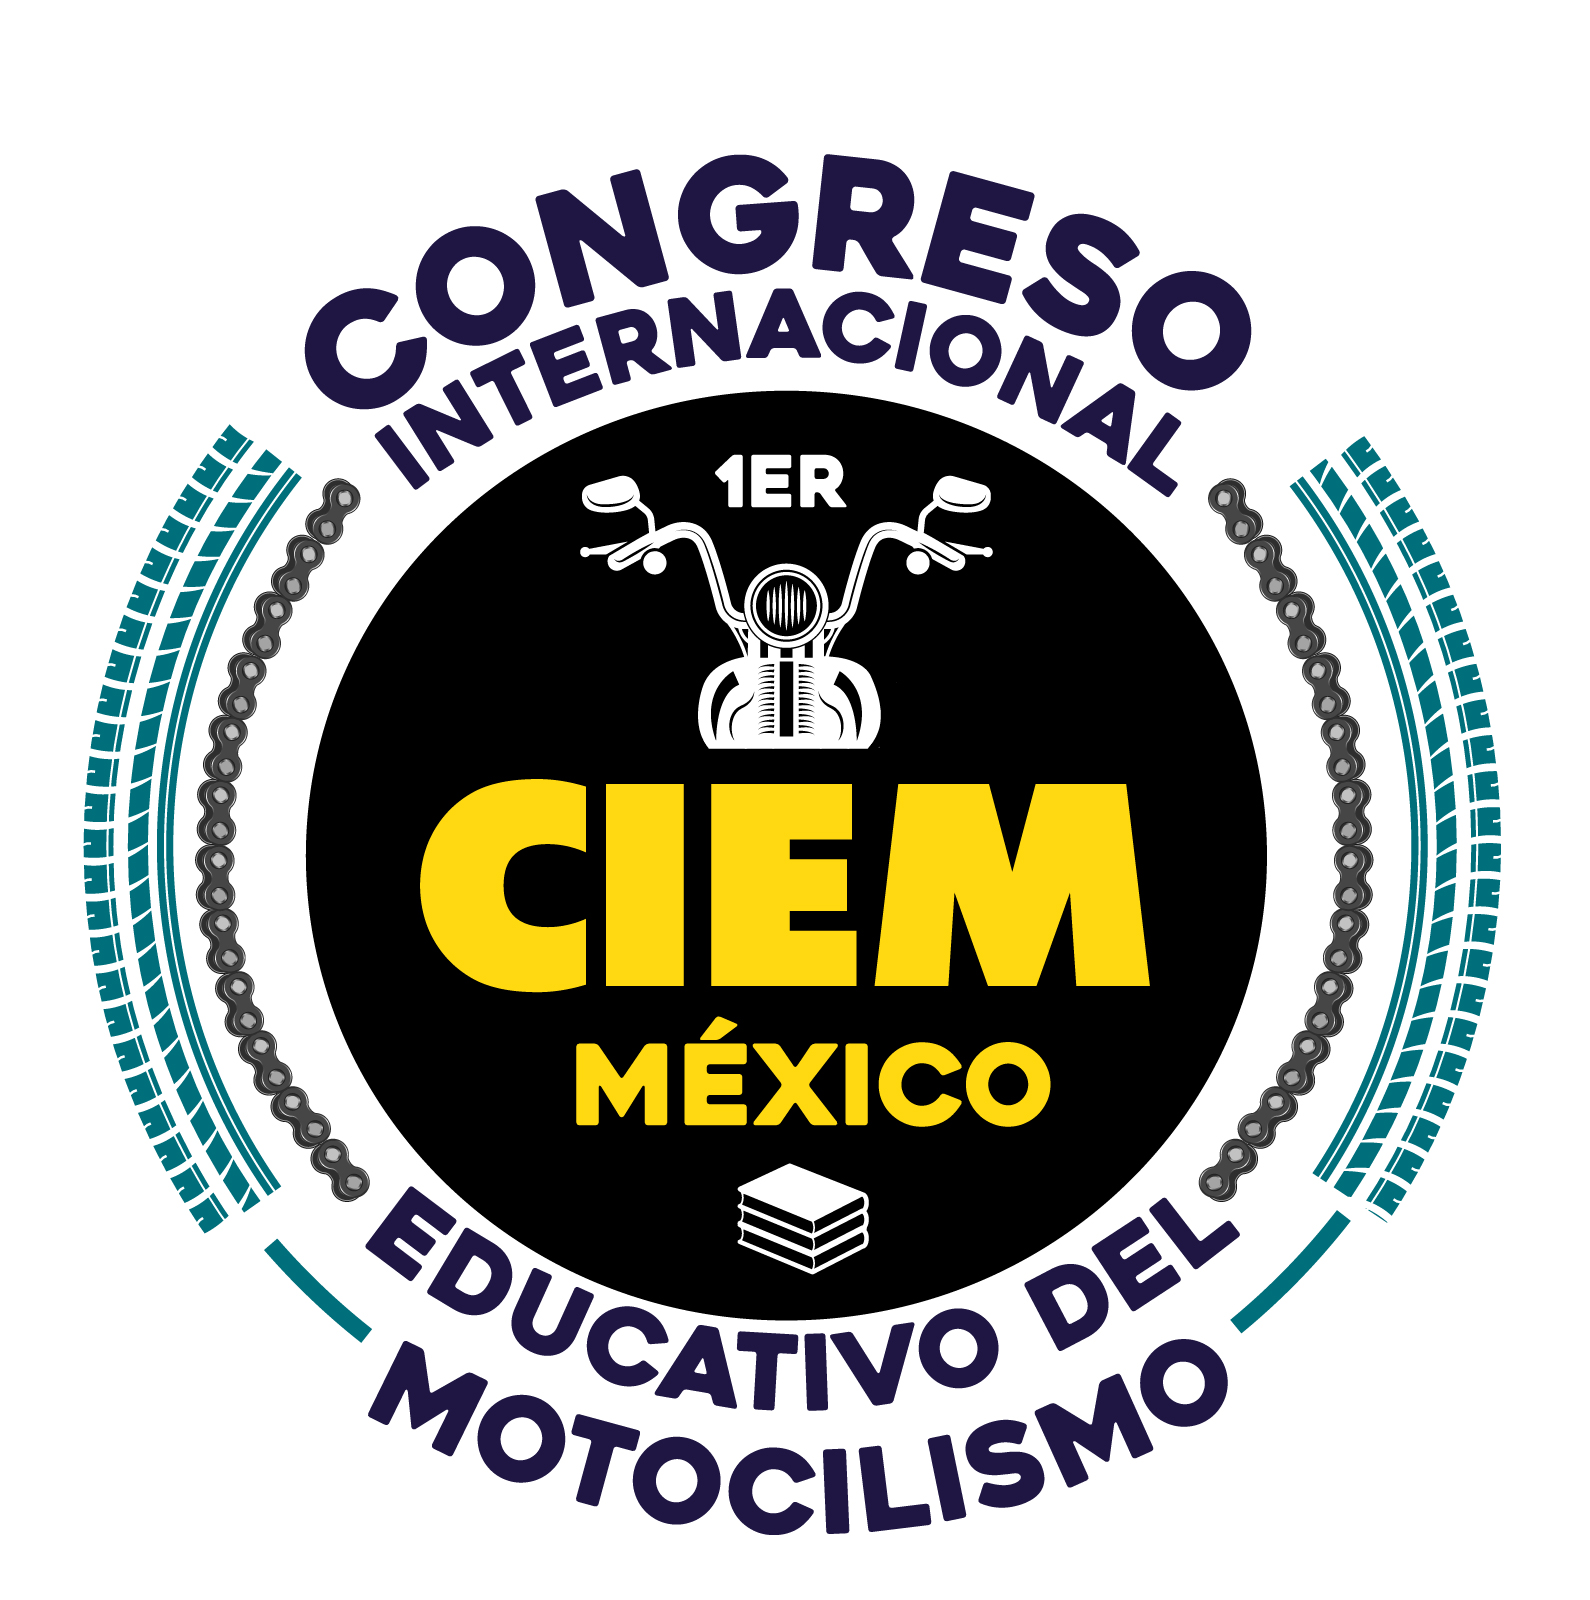 Congreso Internacional Educativo del Motociclismo